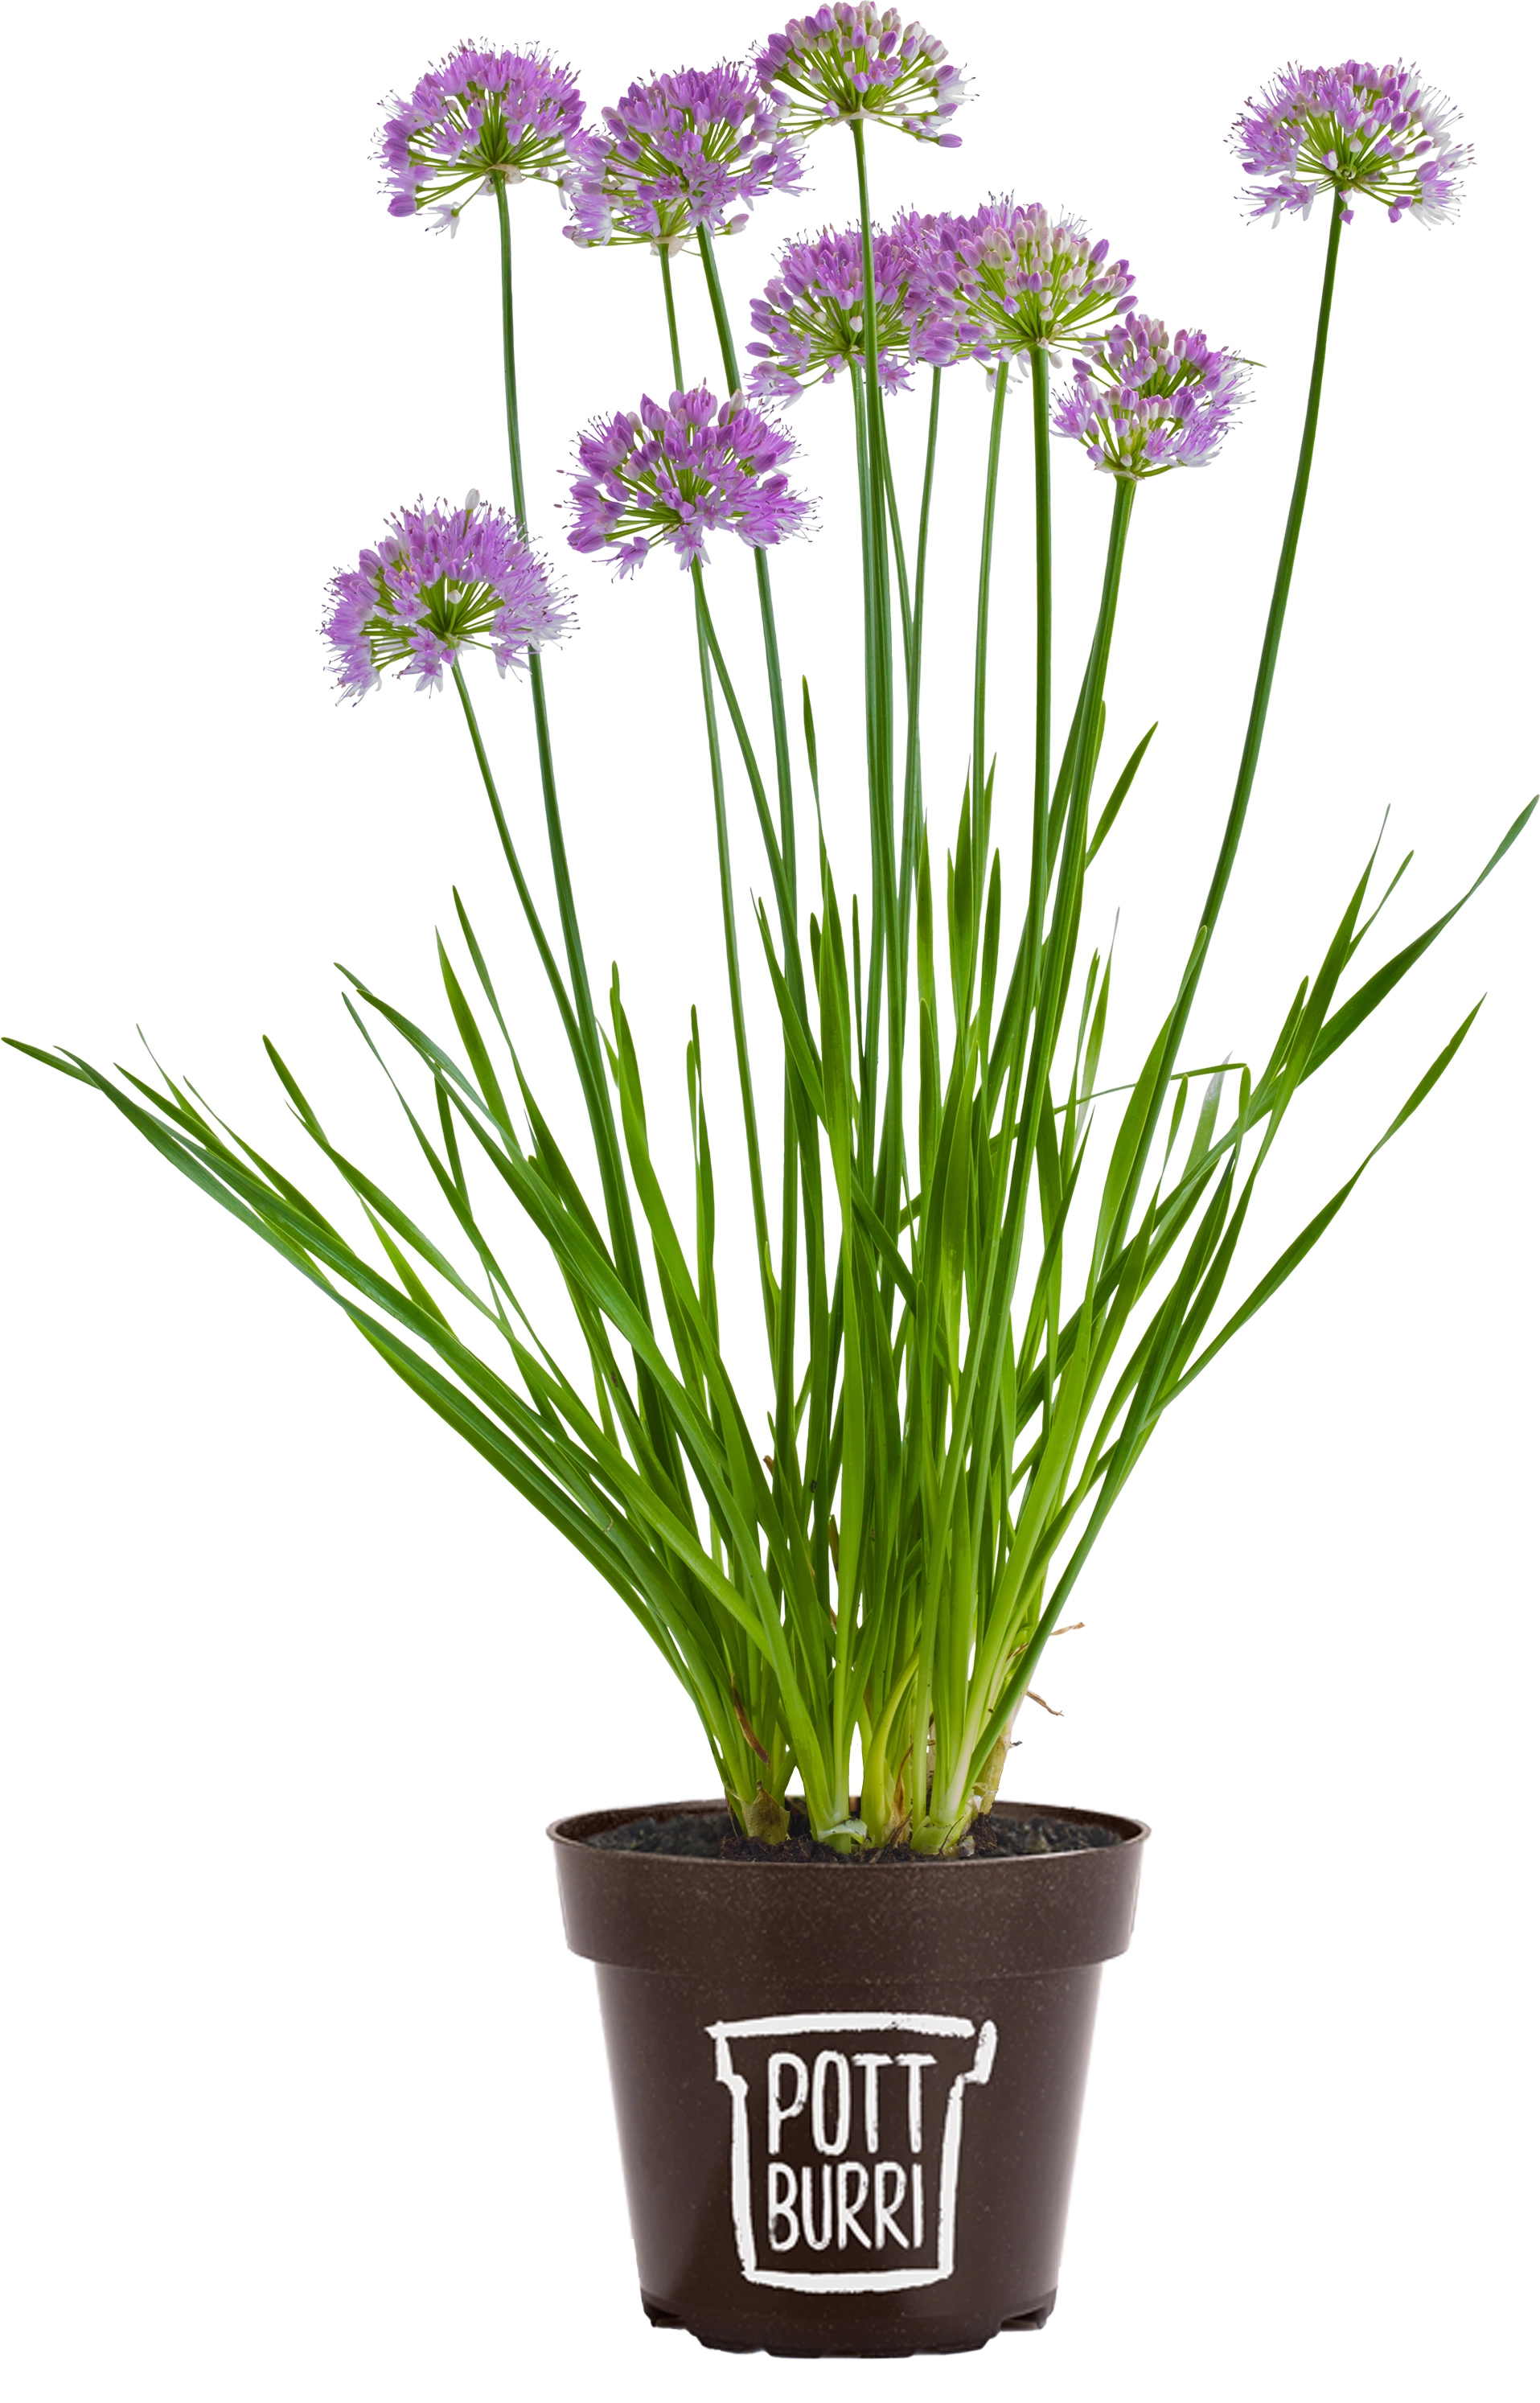 6er Set Pottburri Allium Violett Topf-Ø ca. 12 cm Allium kaufen bei OBI